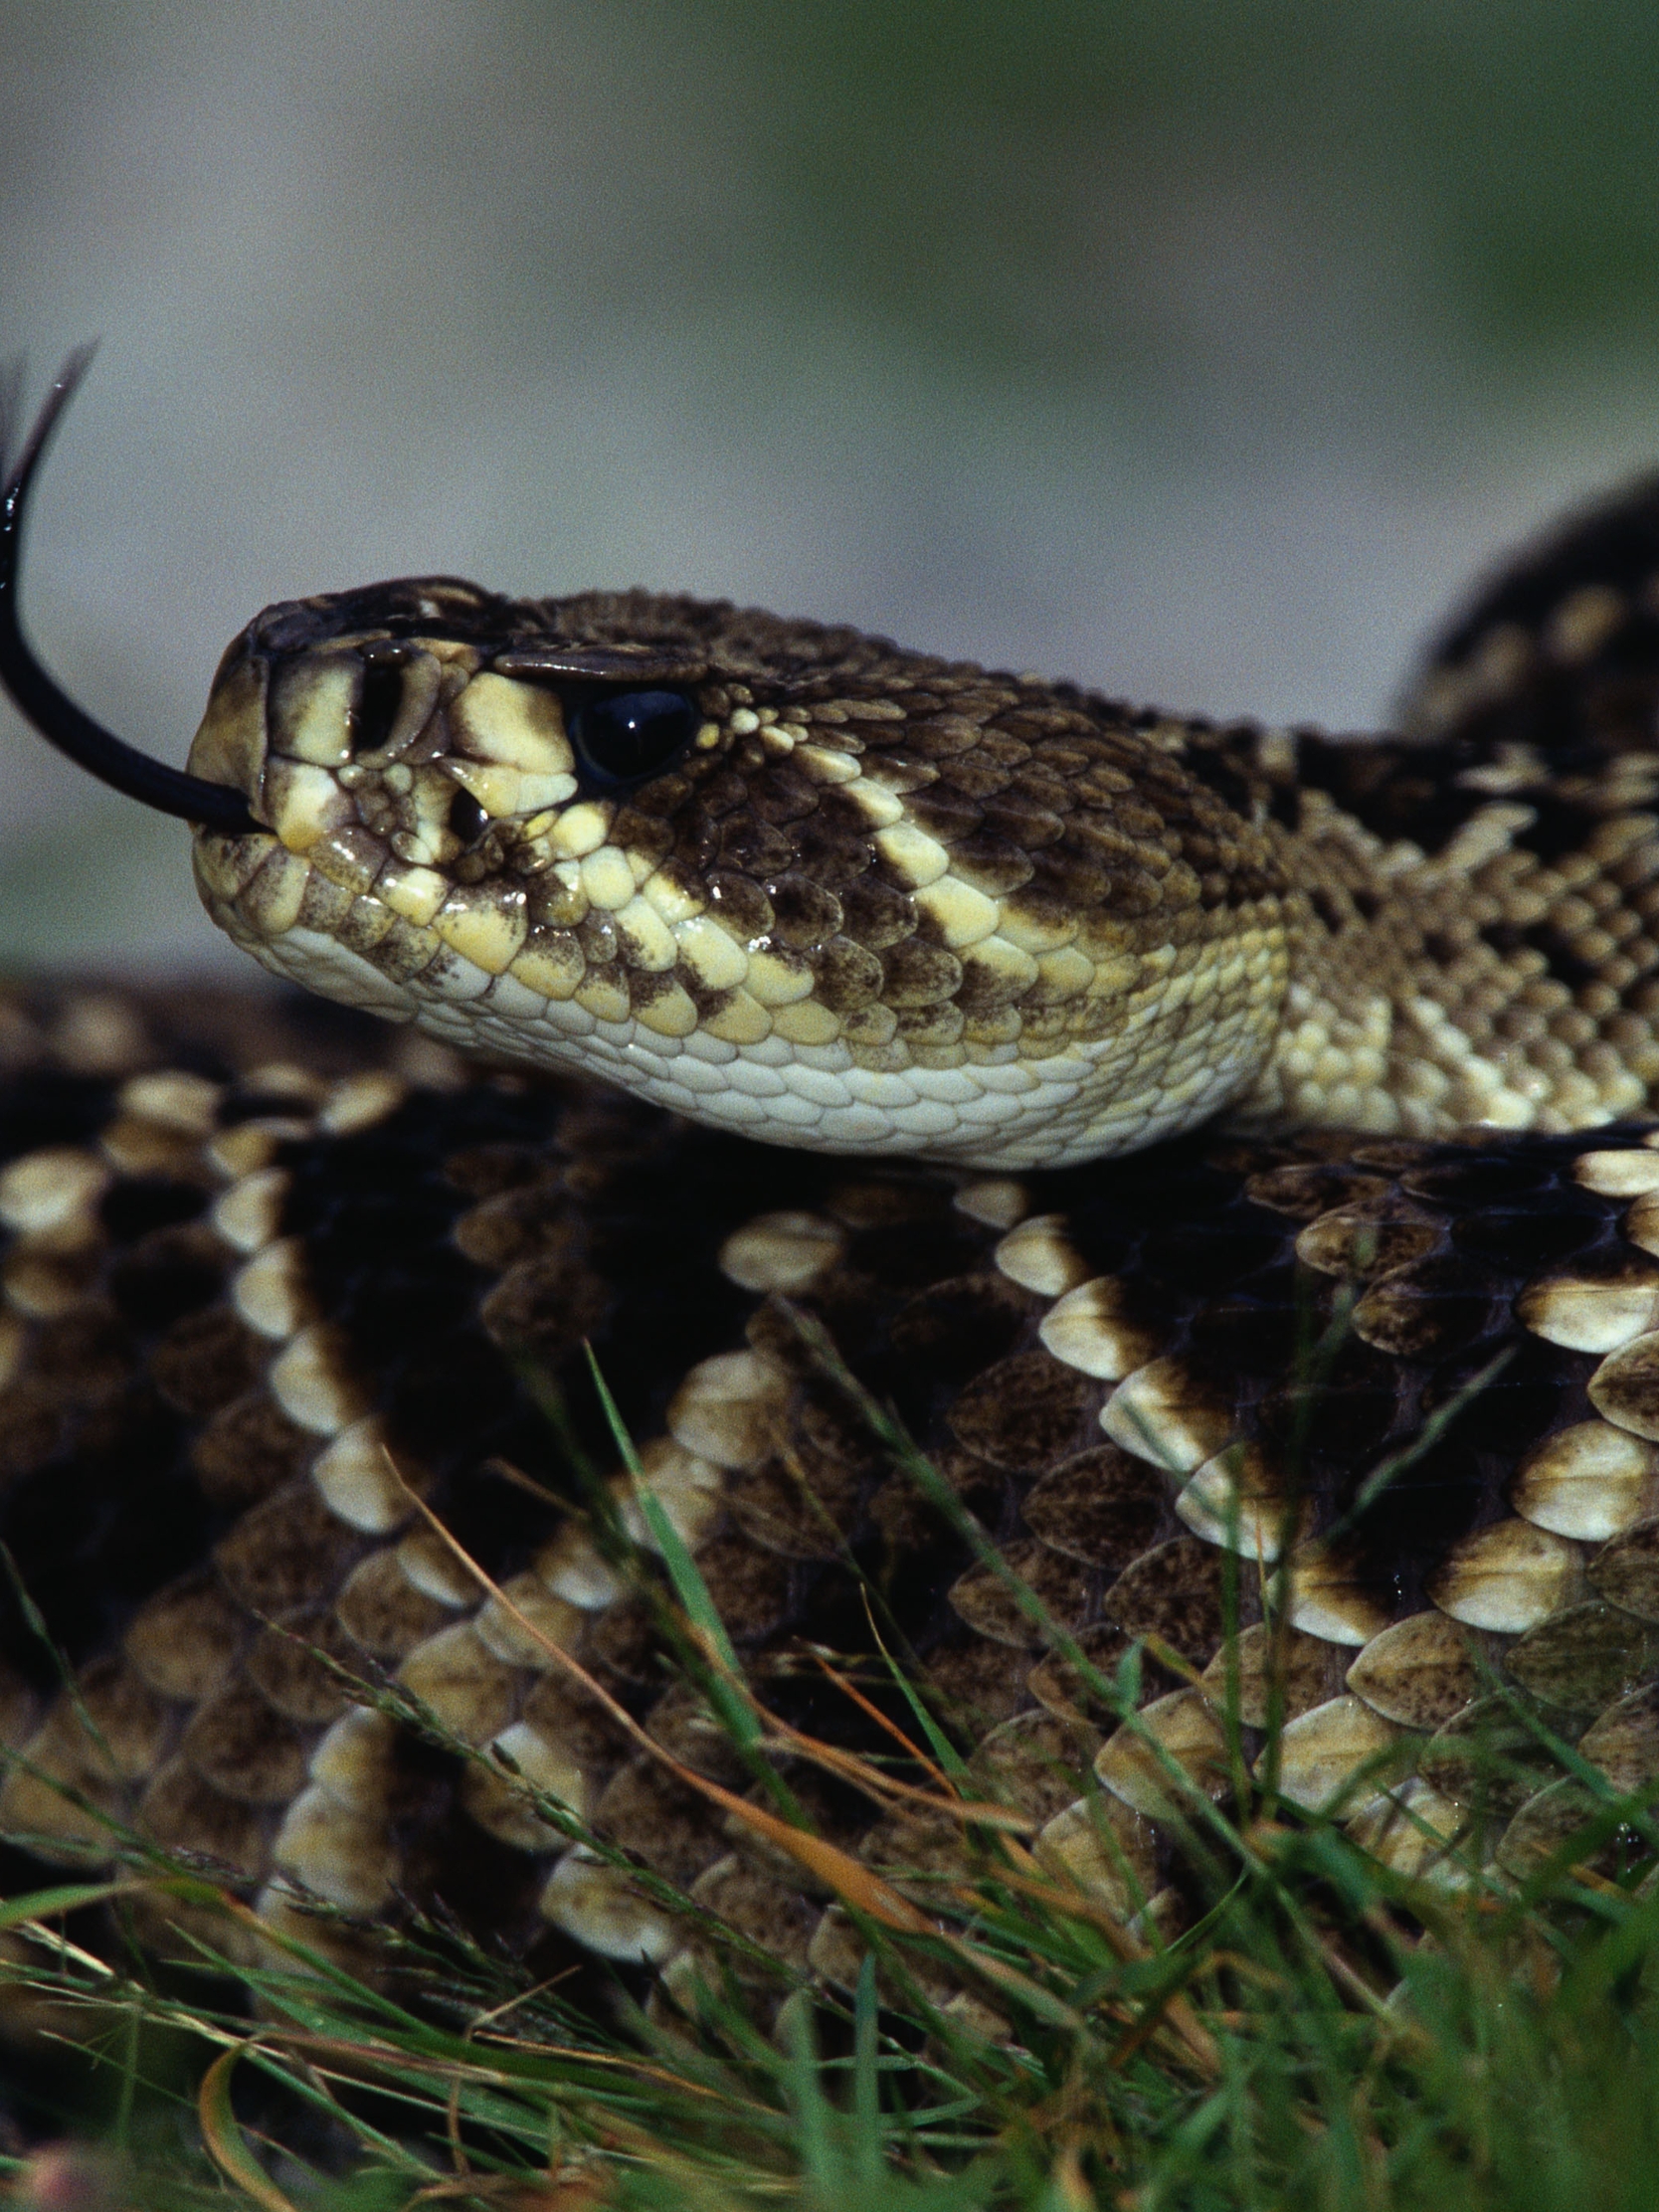 Картинка: Гремучая змея, гадюка, язык, шипение, чешуйки